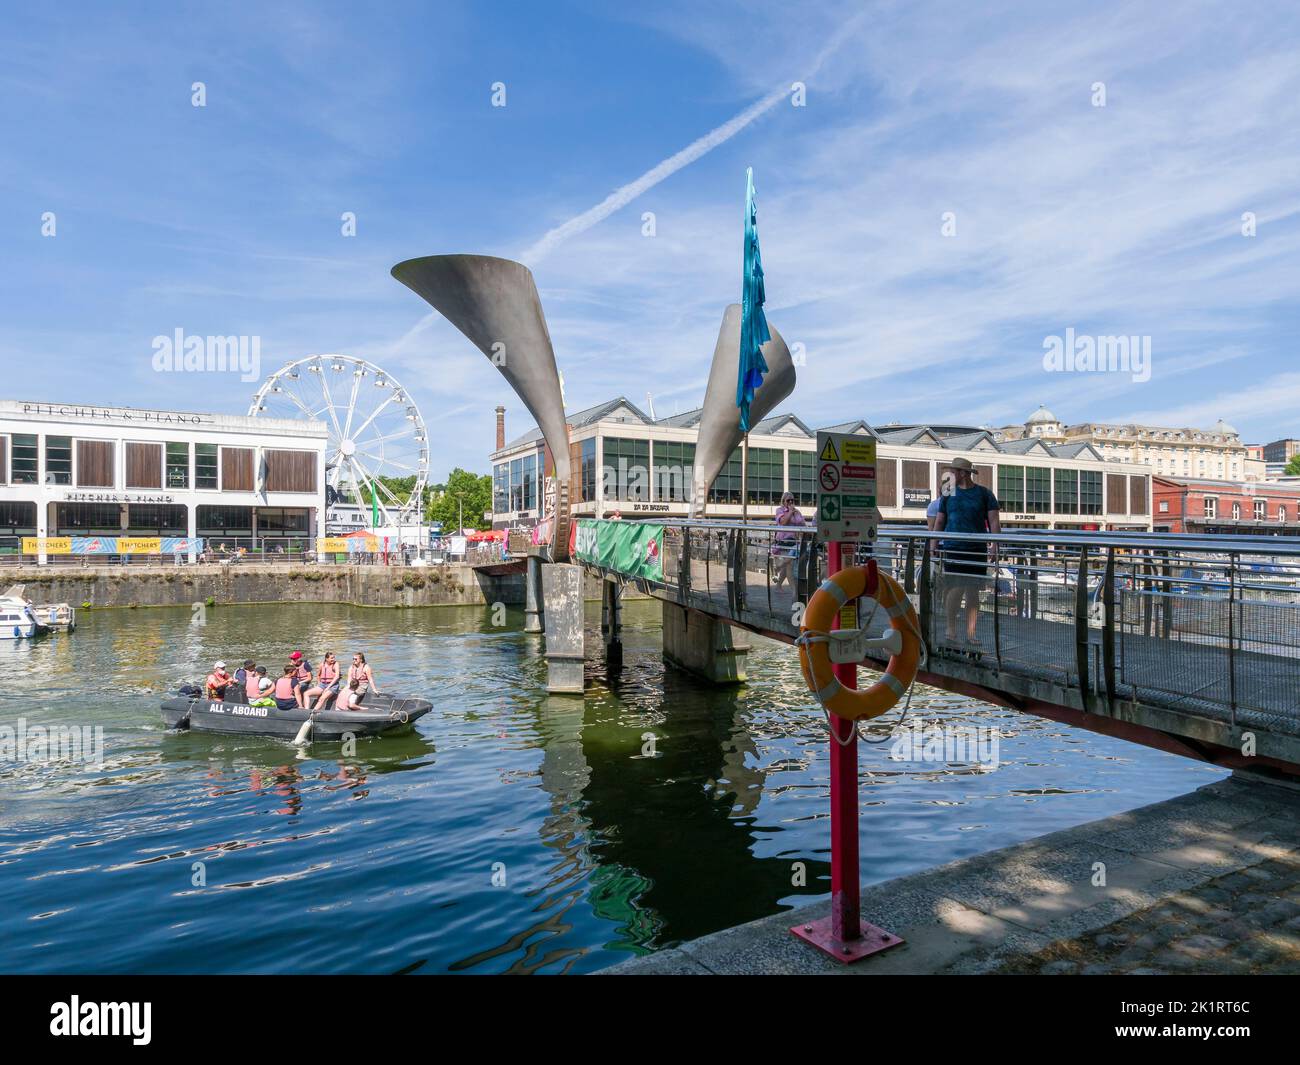 Pero’s Bridge, le pont de bascule enjambant la portée de St Augustine dans le port flottant de Bristol lors du Festival de Bristol Harbour en 2022, Angleterre, Royaume-Uni. Banque D'Images